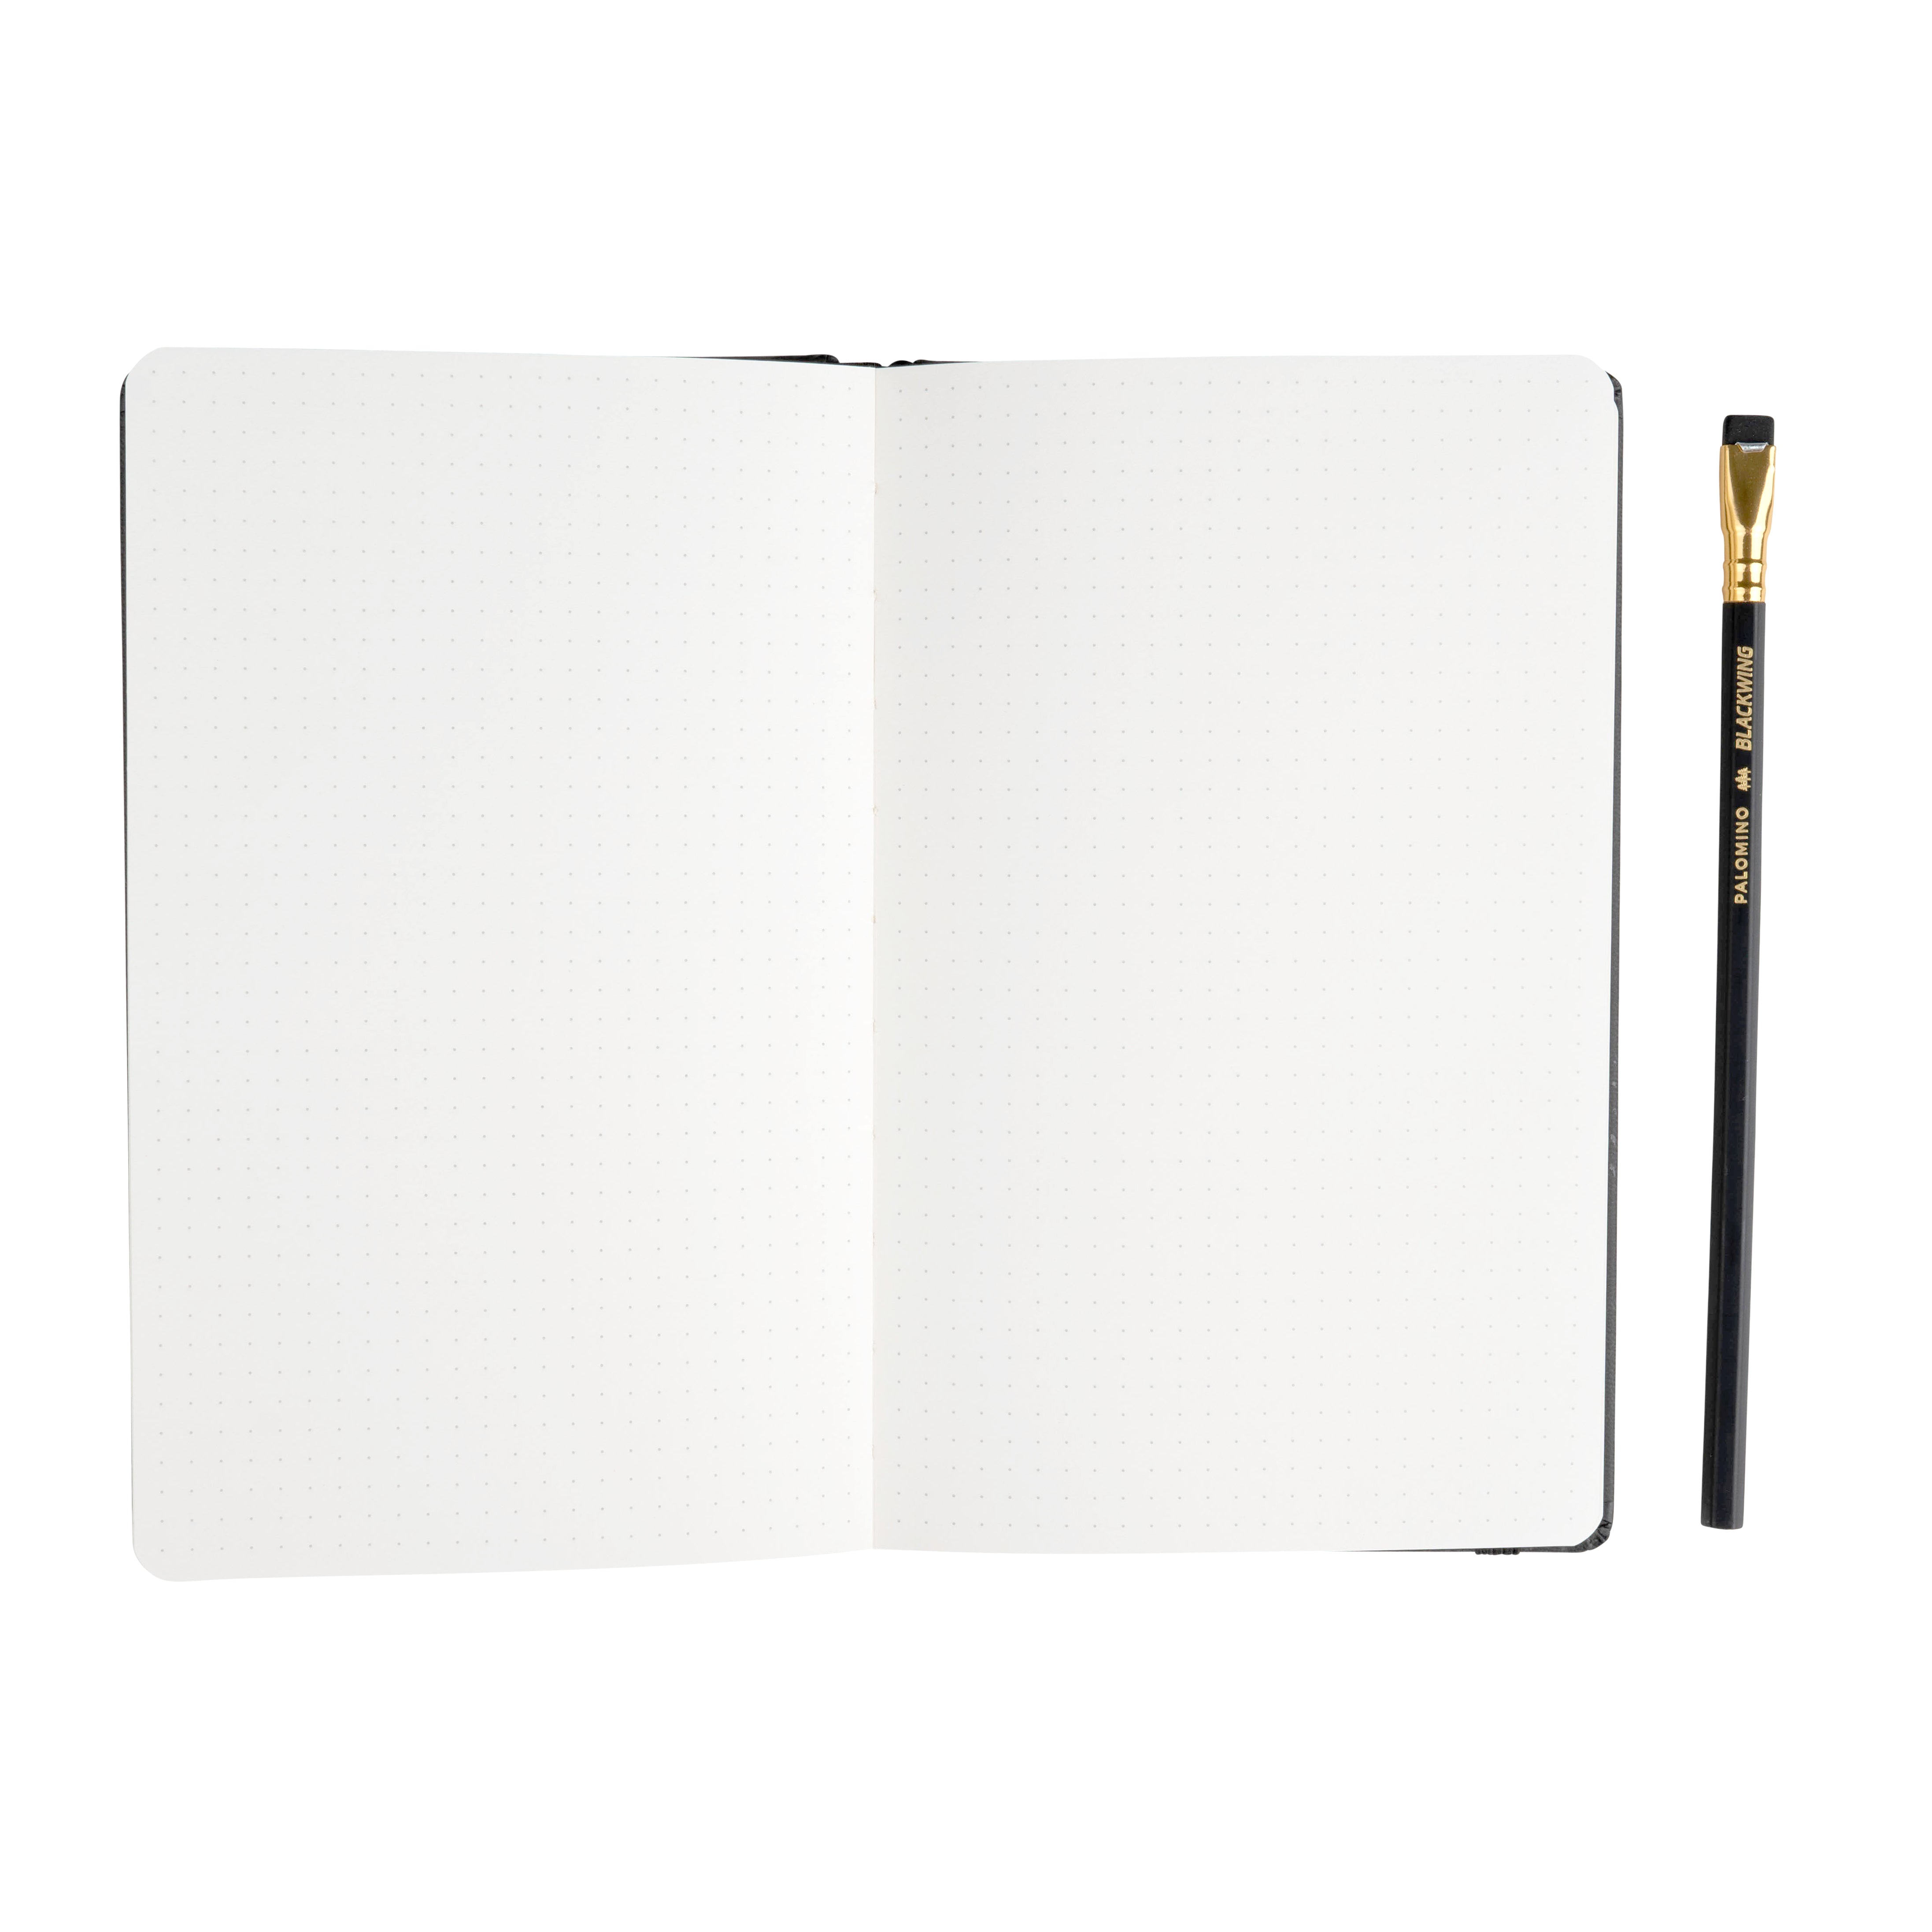 Buy KEFF Bullet Dotted Journal Kit - Dot Journaling Set Supplies